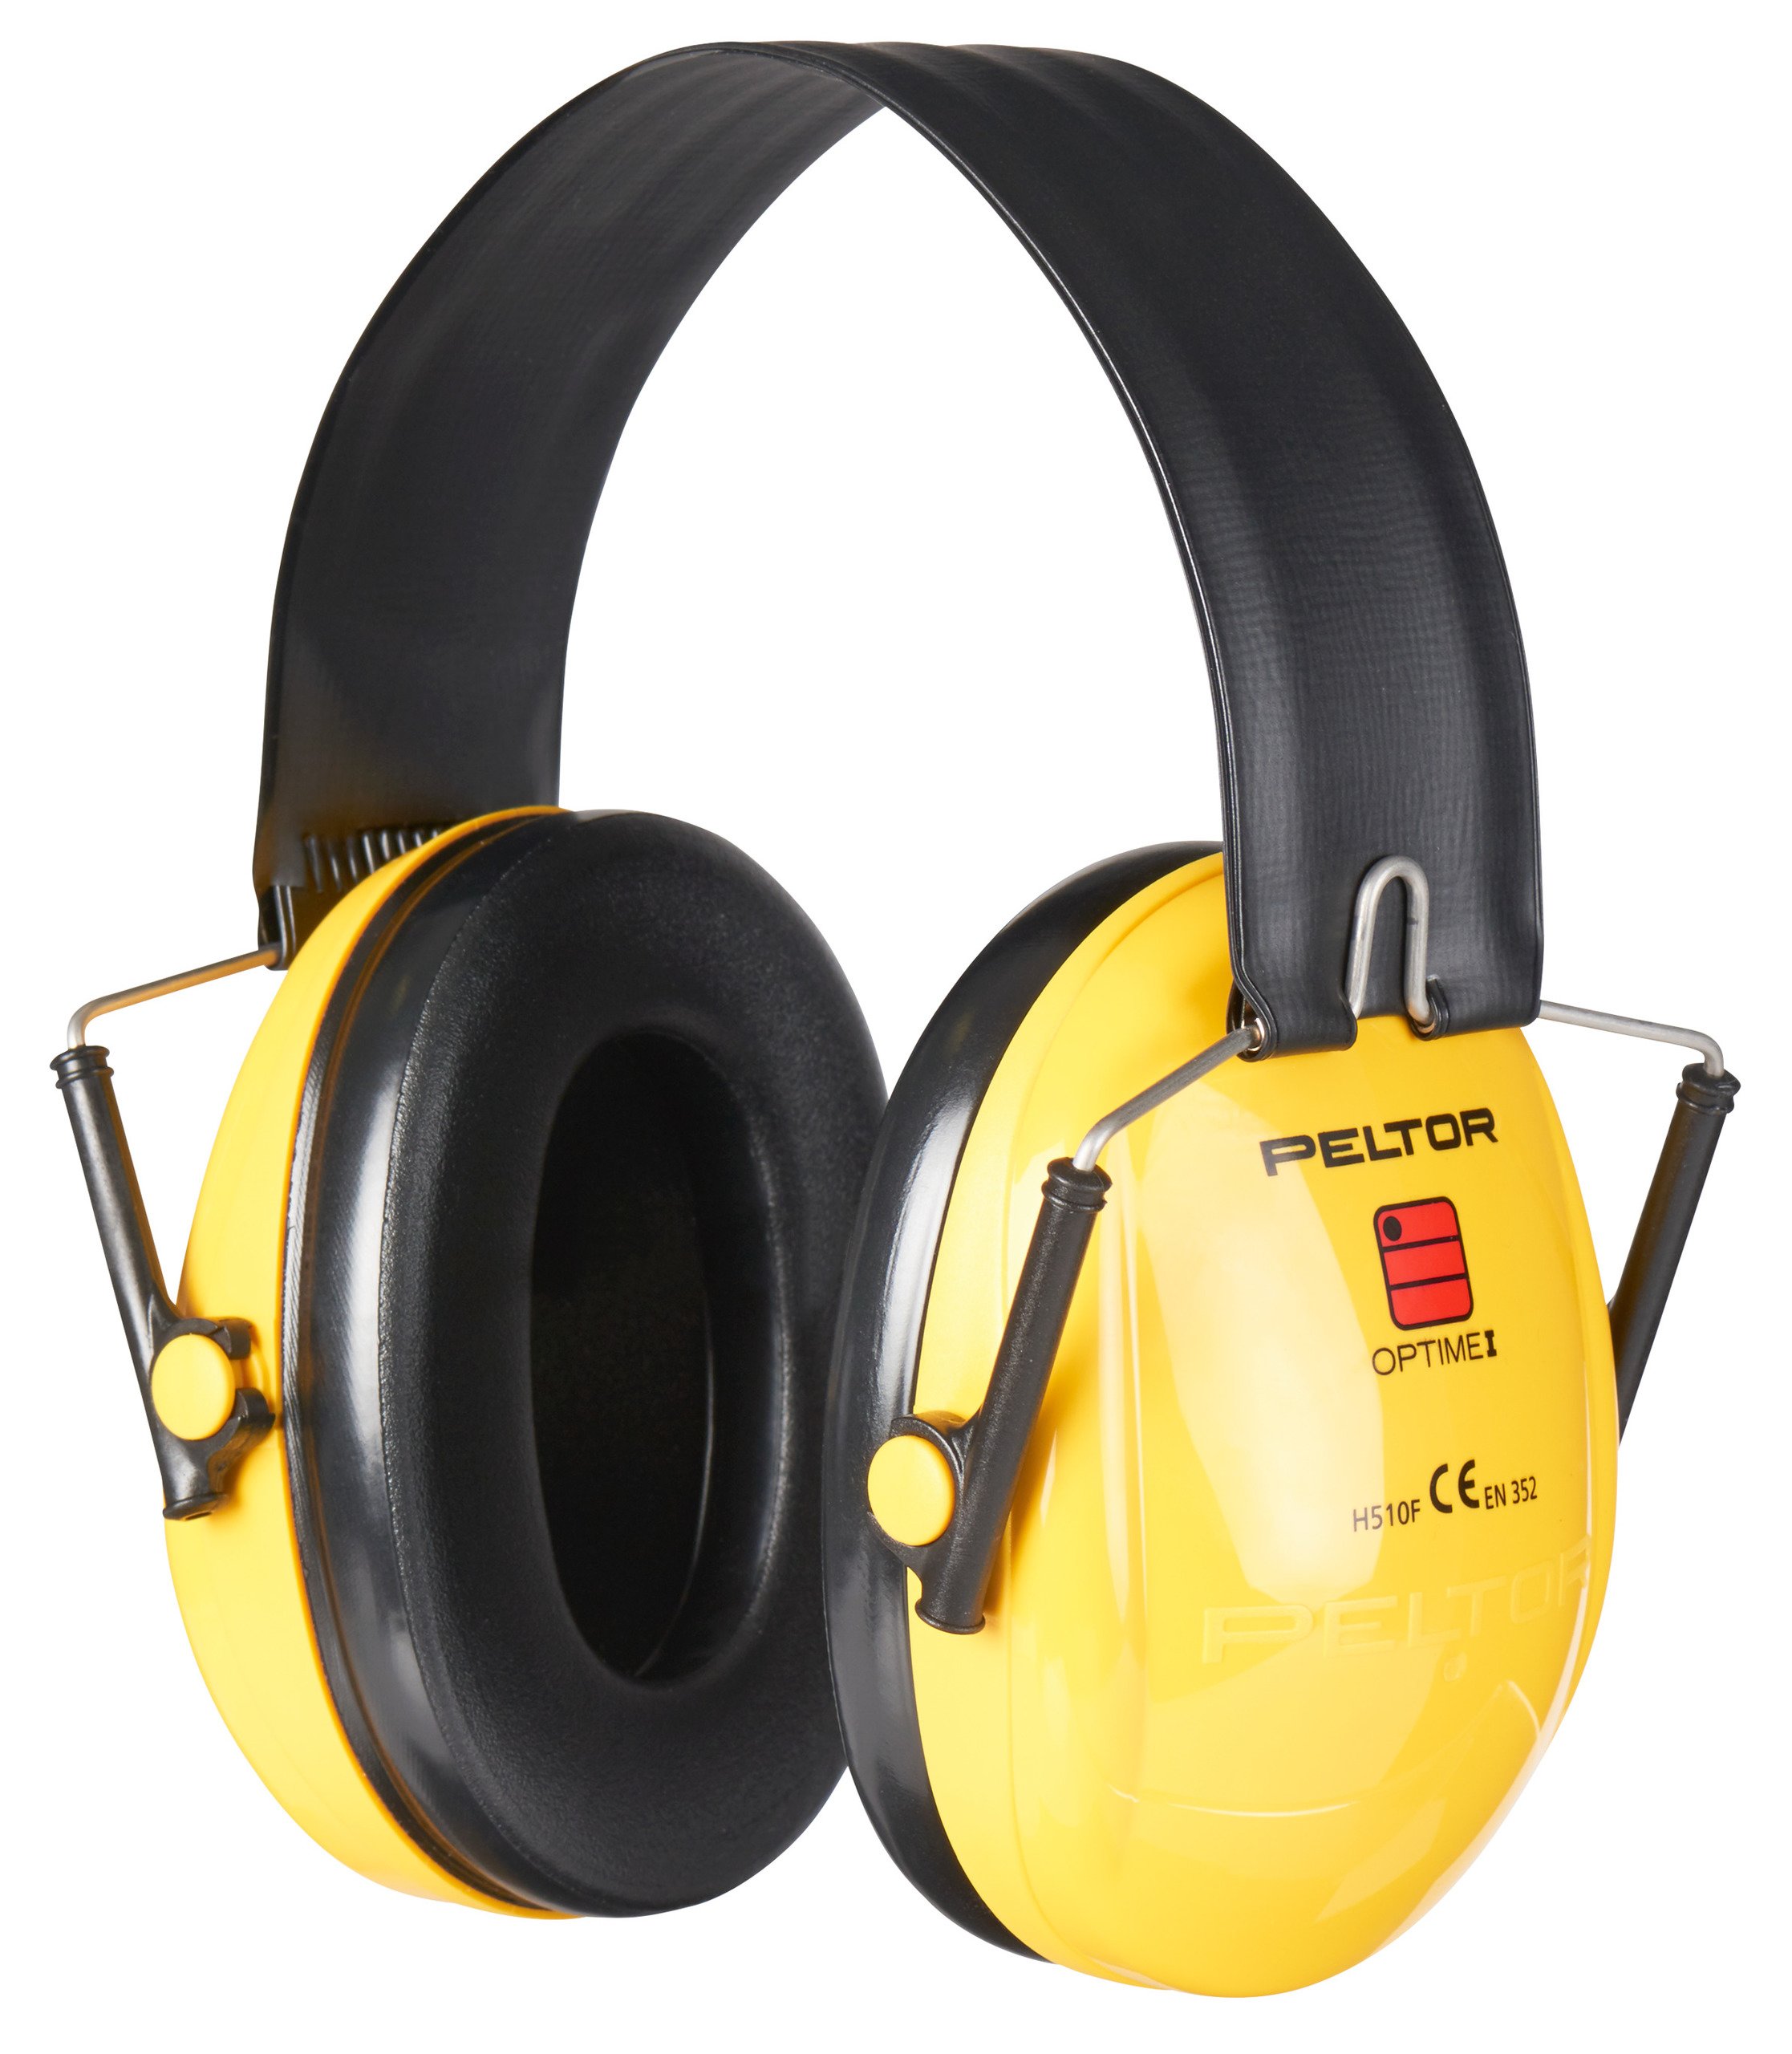 Peltor Gehörschutz Optime I mit faltbarem Bügel (H510F)